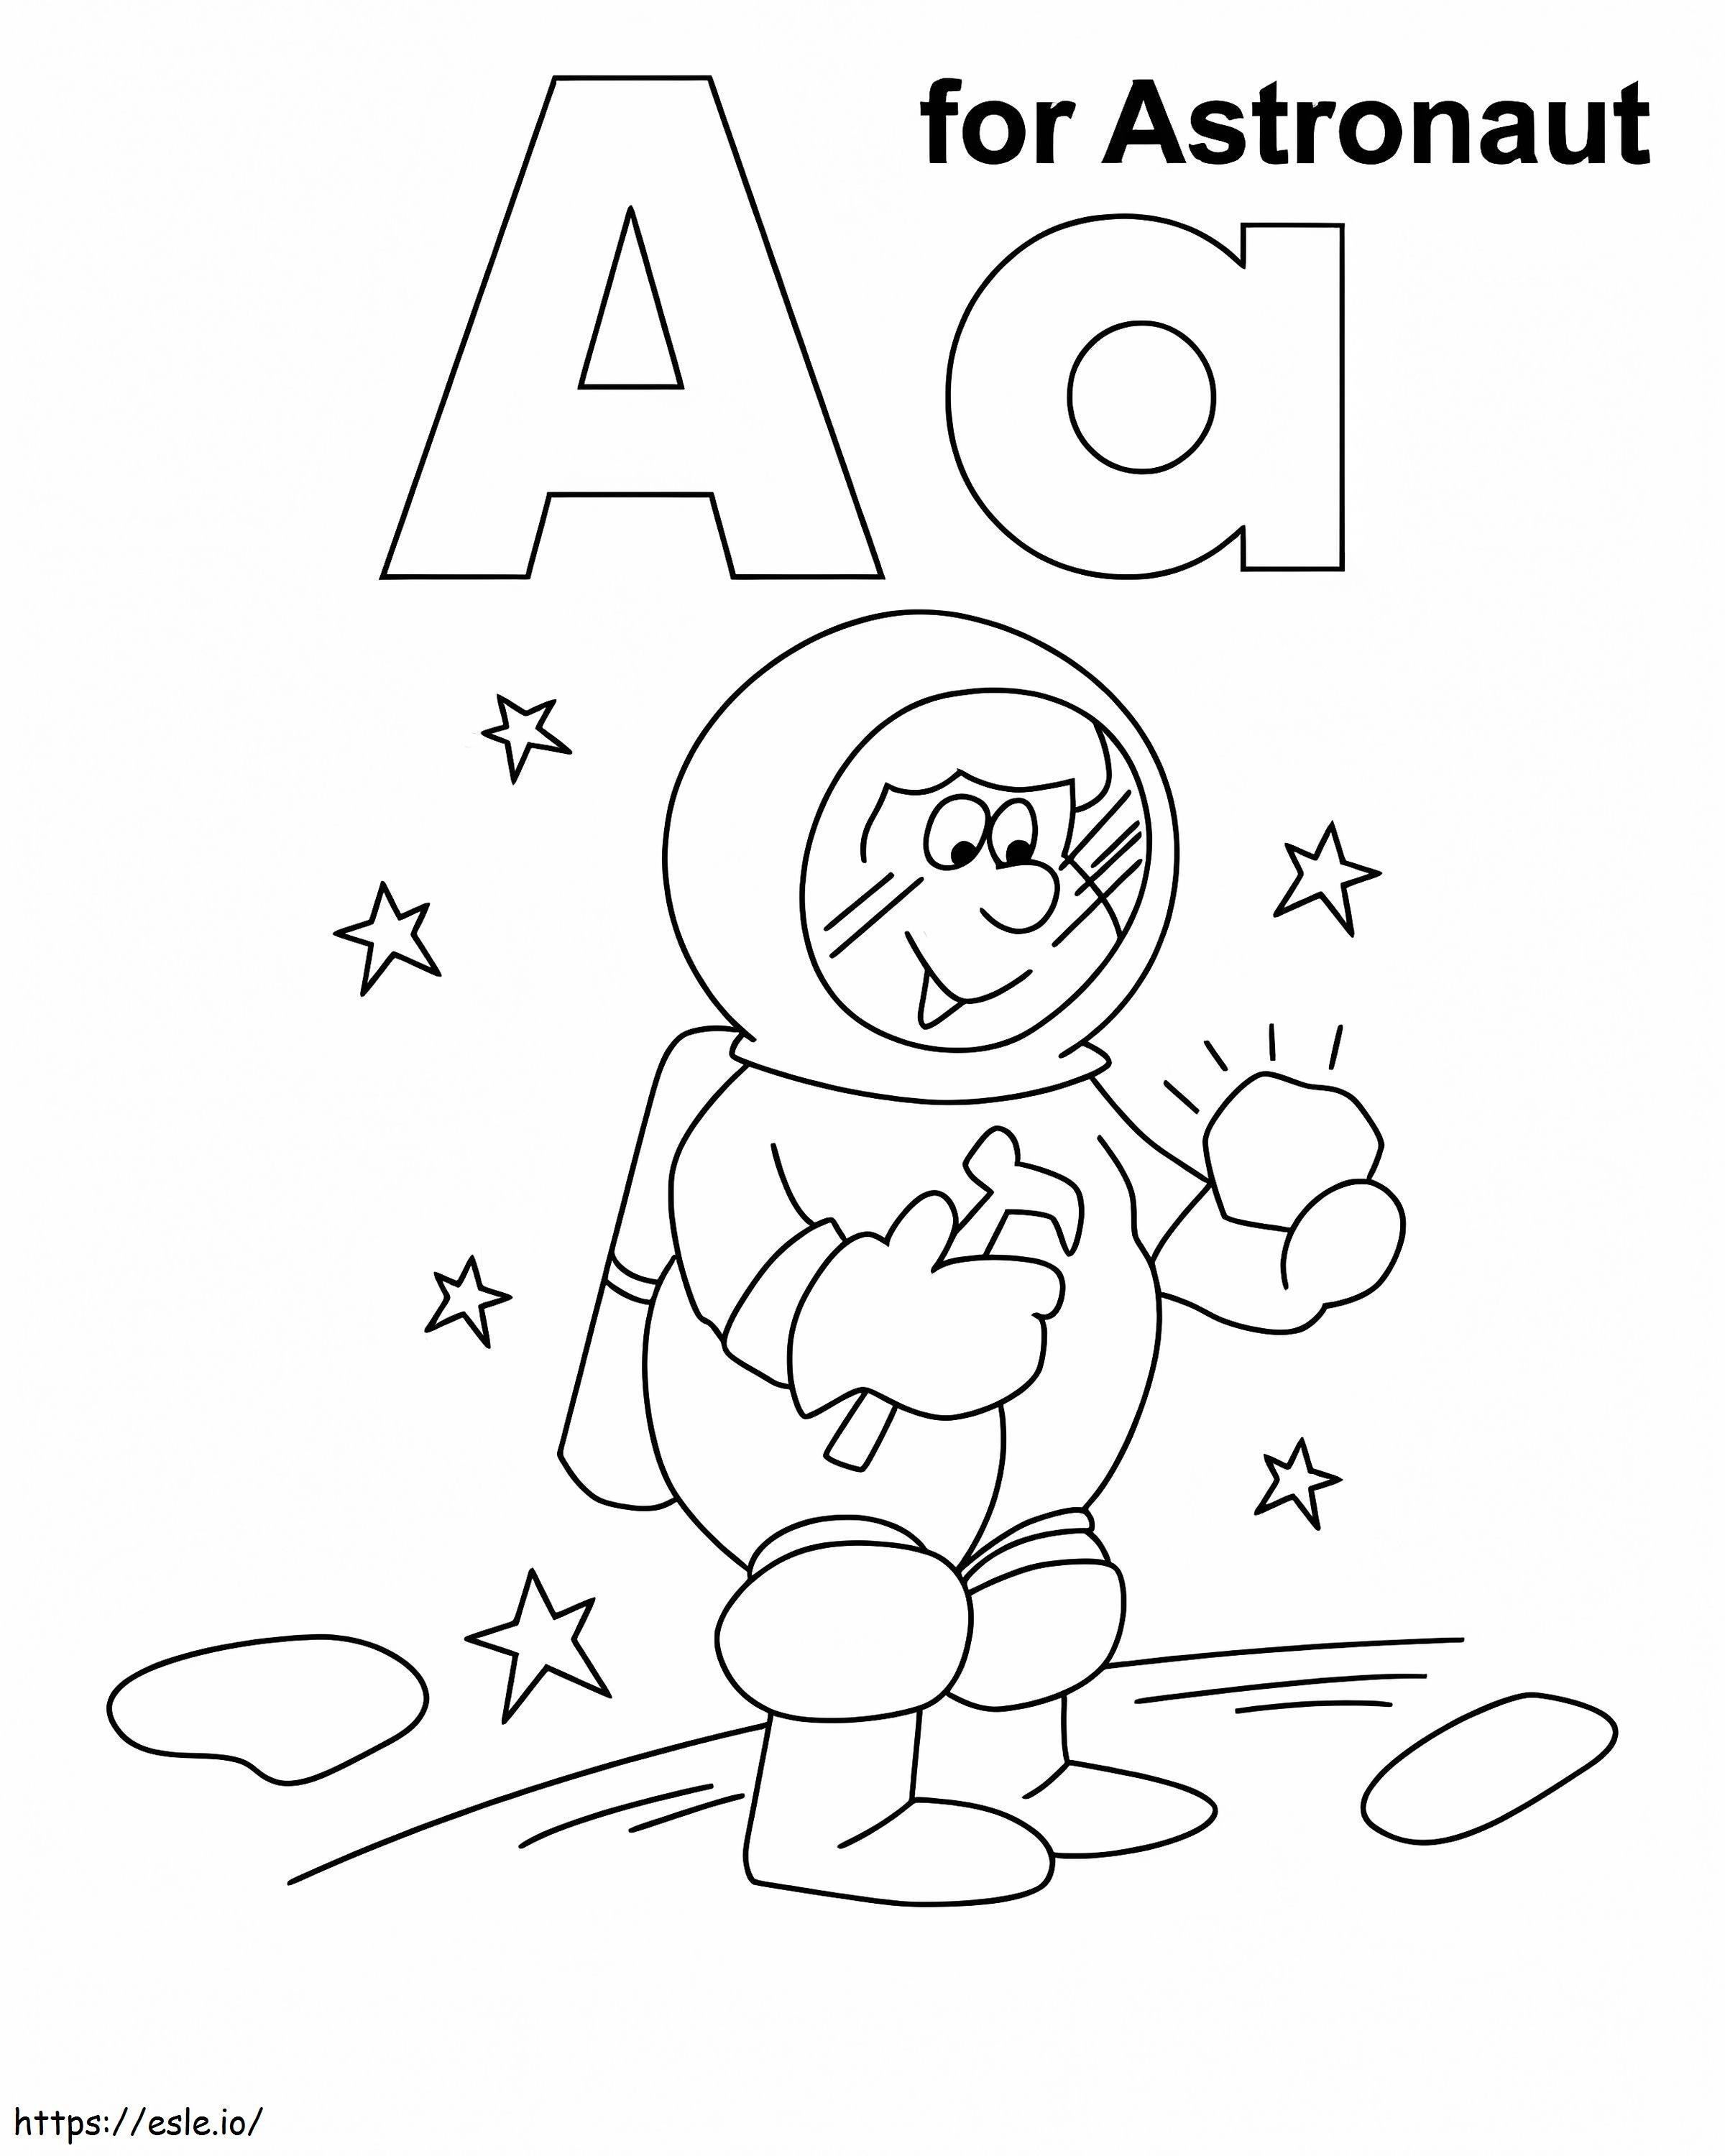 Letra A para astronauta para colorear